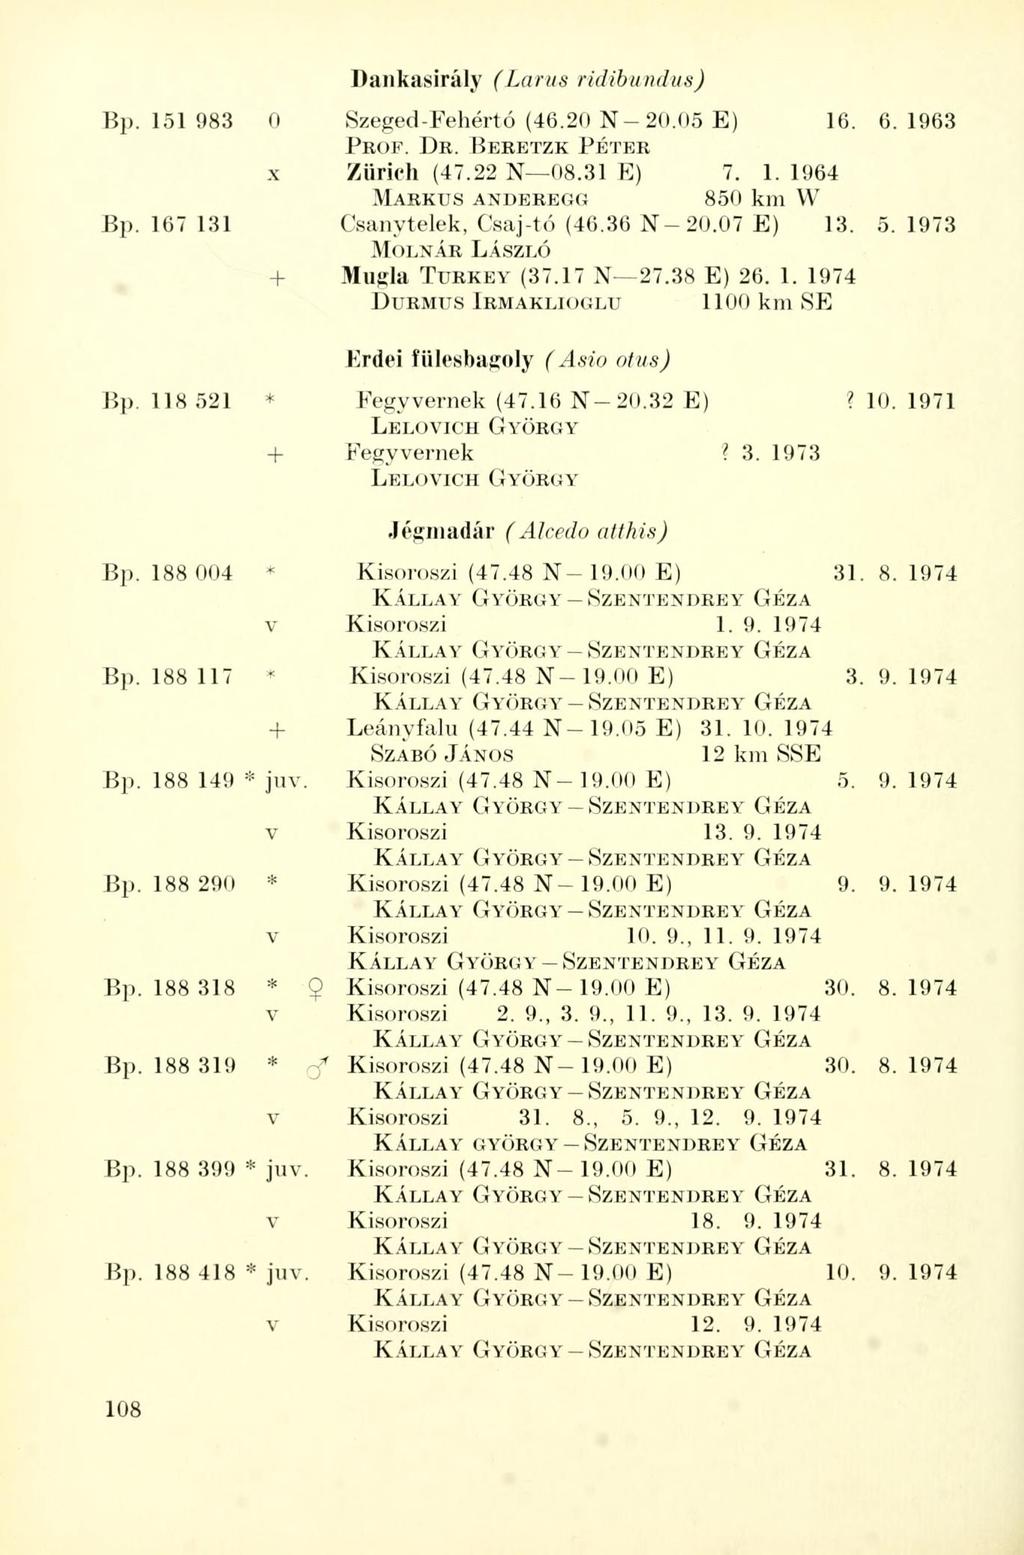 Dankasirály (Larus ridibundus) Bp. 151 983 0 Szeged-Fehértó (46.20 N 20.05 E) 16. 6.1963 PROF. DR. BERETZK PÉTER x Zürich (47.22 N 08.31 E) 7. 1. 1964 MARKUS ANDEREGG 850 km W Bp.